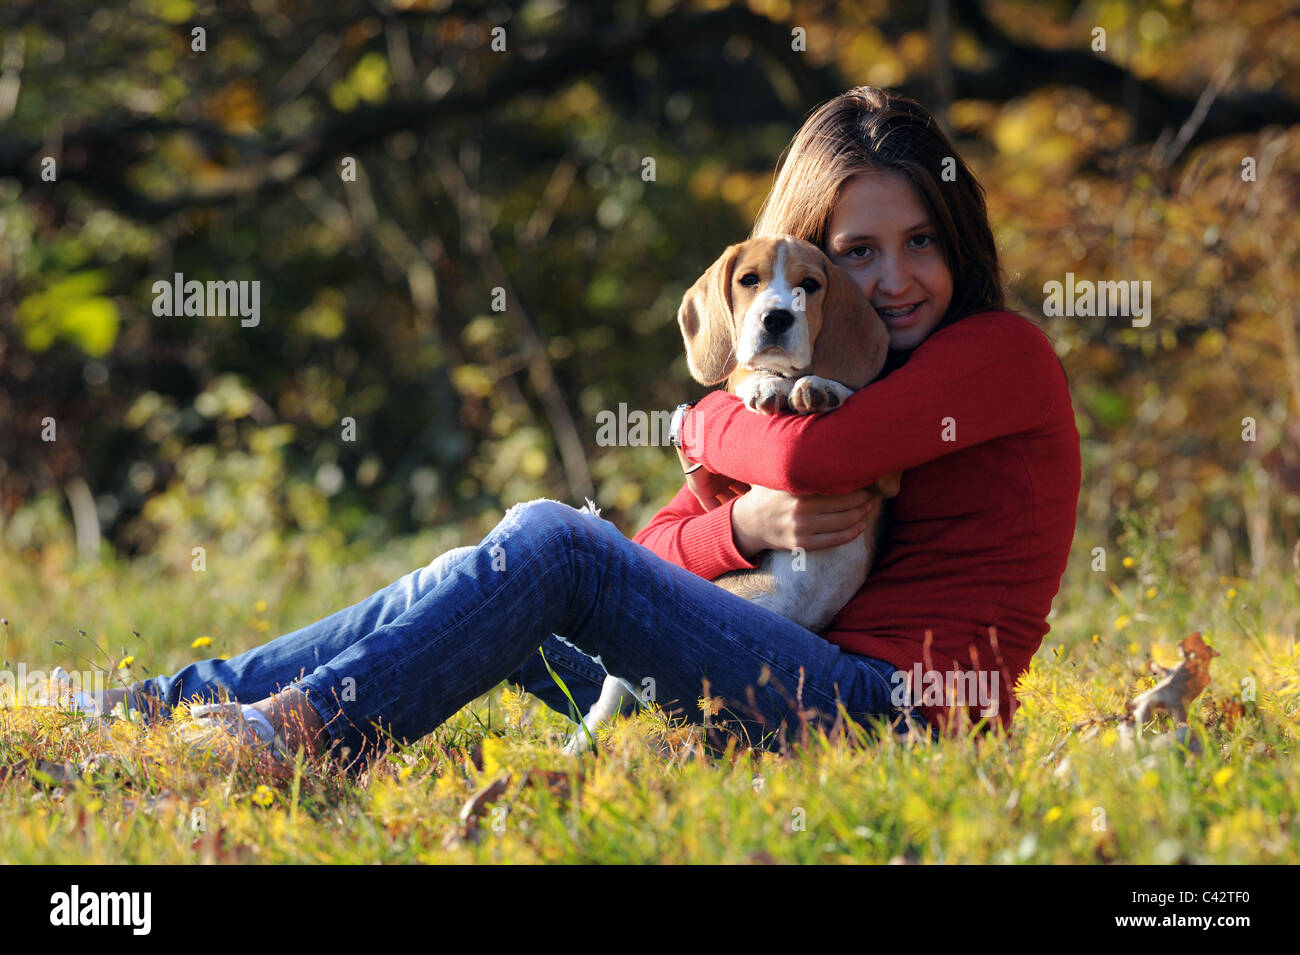 Beagle (Canis lupus familiaris). Fille avec un chien dans ses bras, assis dans un pré. L'Allemagne. Banque D'Images